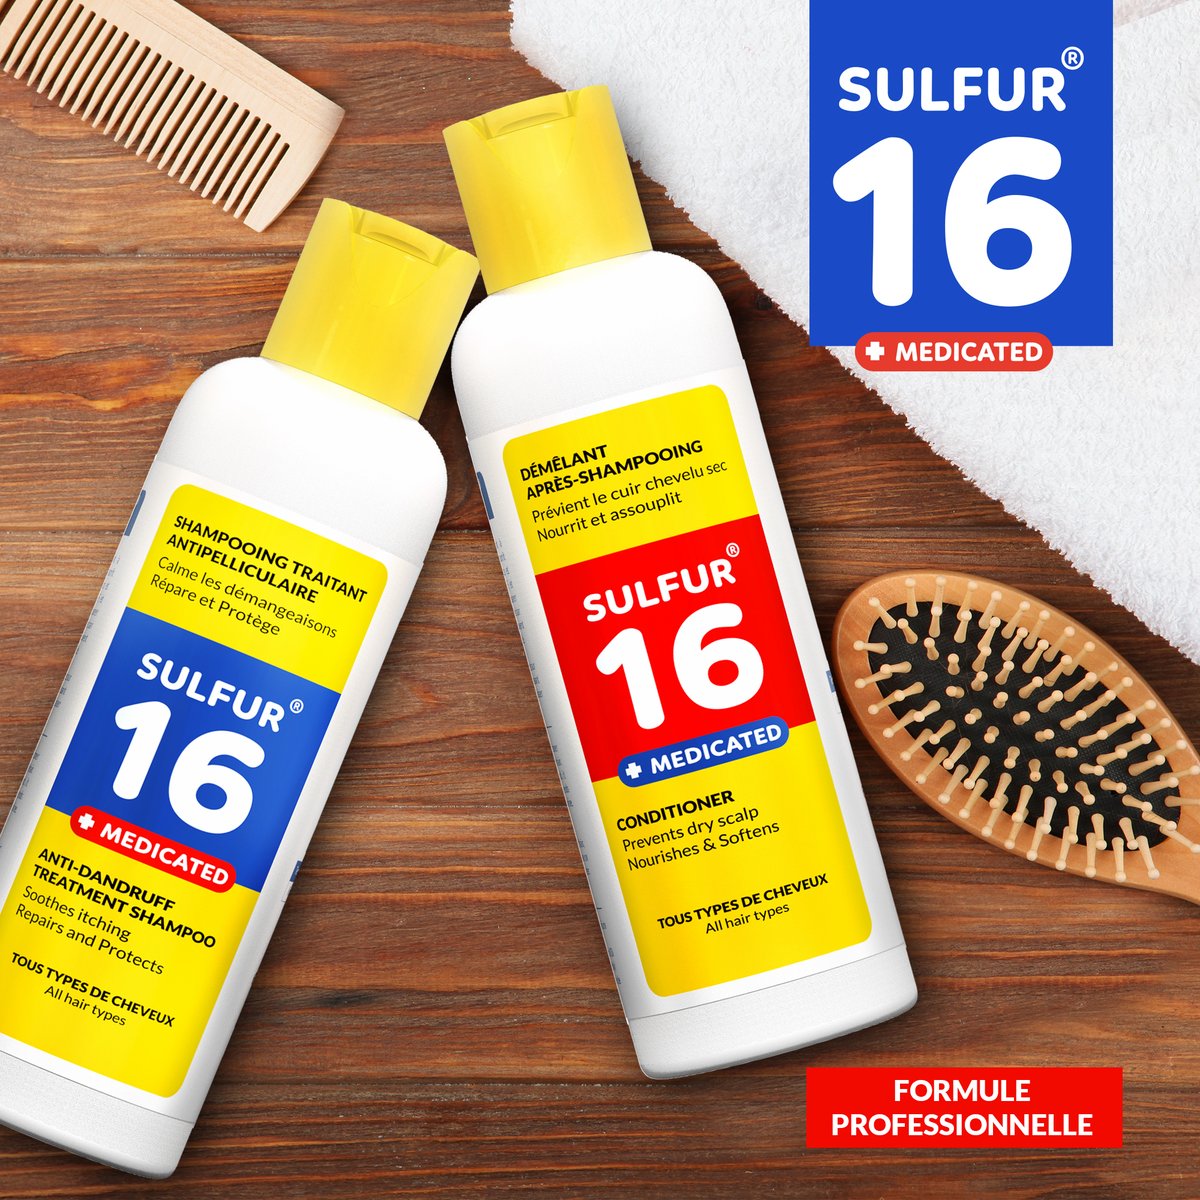 ✨ Dites adieu à vos problèmes de #cuirchevelu, pellicules ou #cheveux abîmés avec la gamme de produits 😍 « SULFUR 16 » !

En complément, le #démêlant après-shampooing nourrit ✨, assouplit et prévient le cuir chevelu sec.

Achetez dans tous les supermarchés 

#copaci #sulfur16